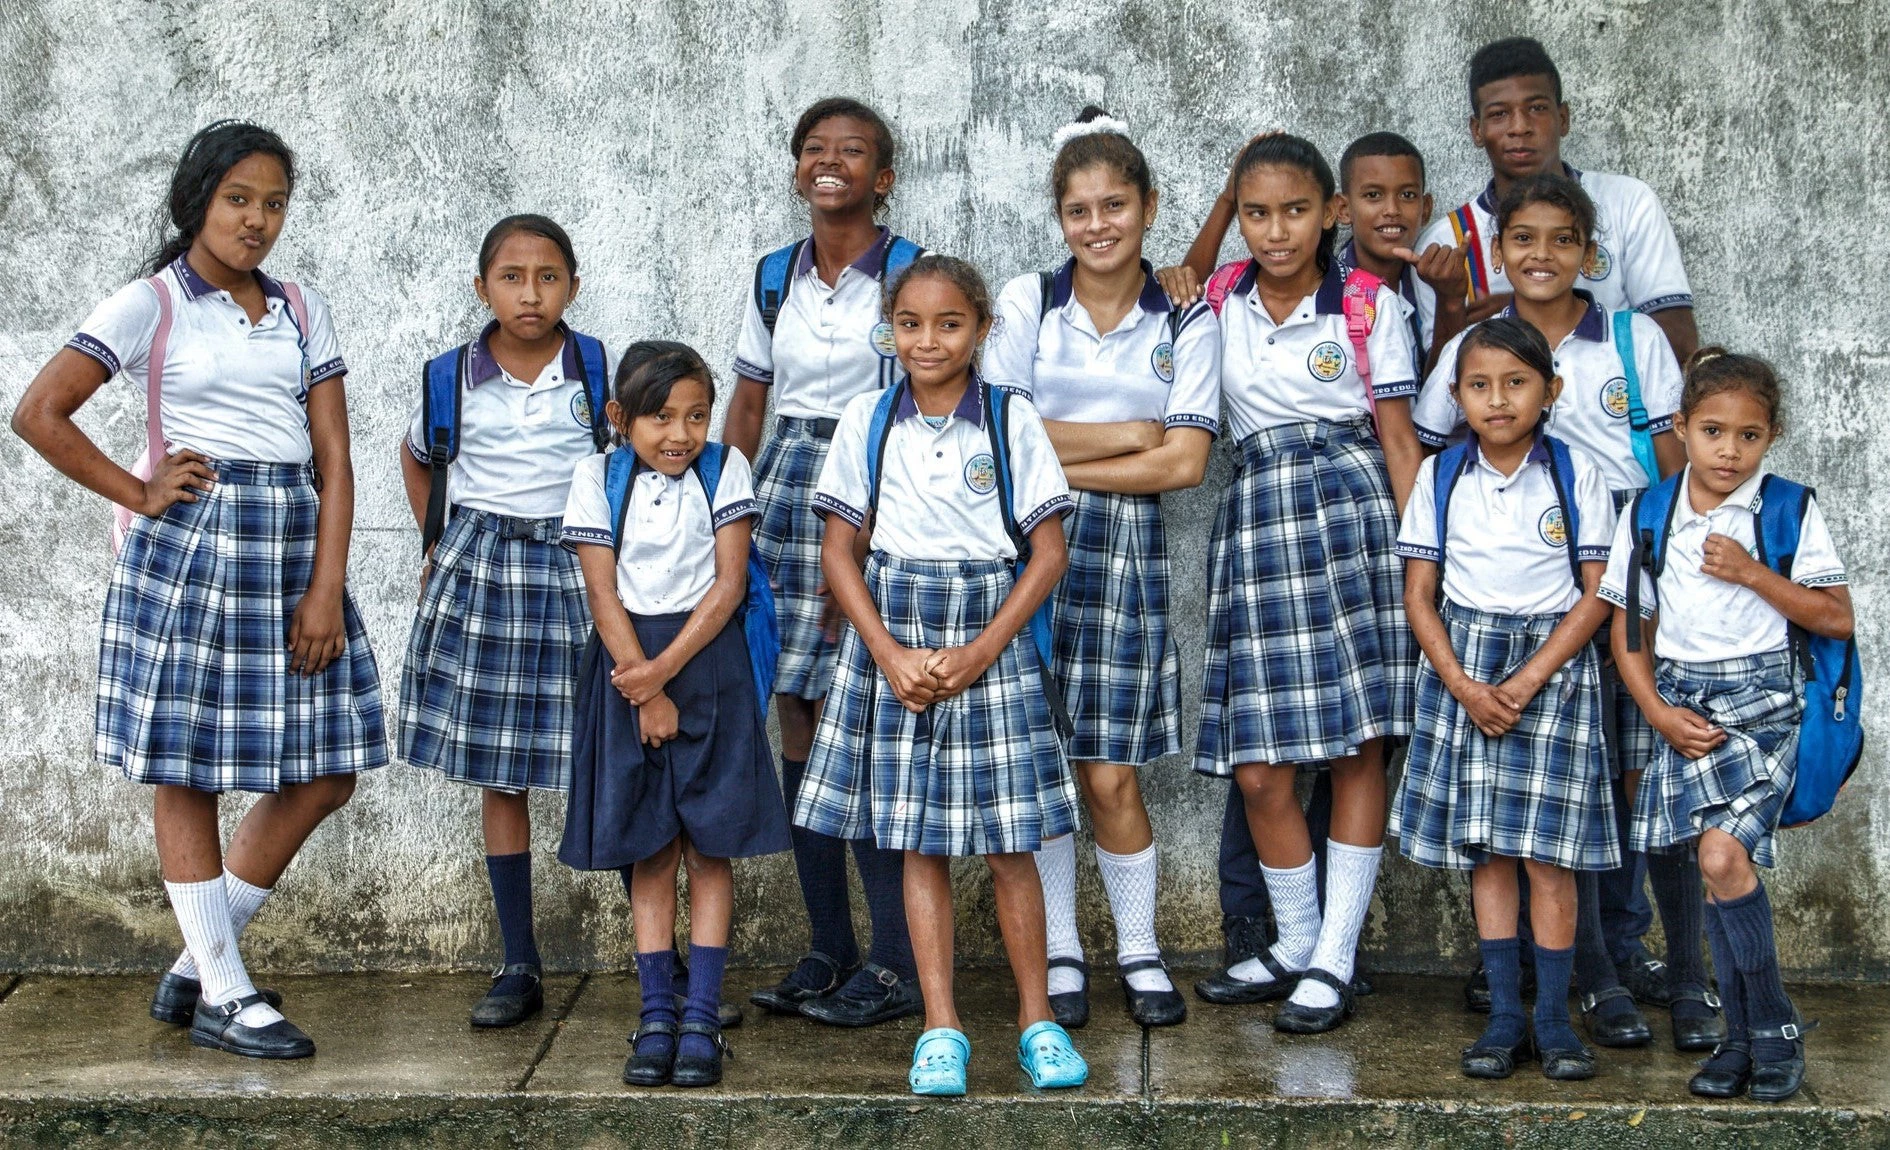 Des écolières en uniforme. Photo: © Diego F, Dussán/Banque mondiale